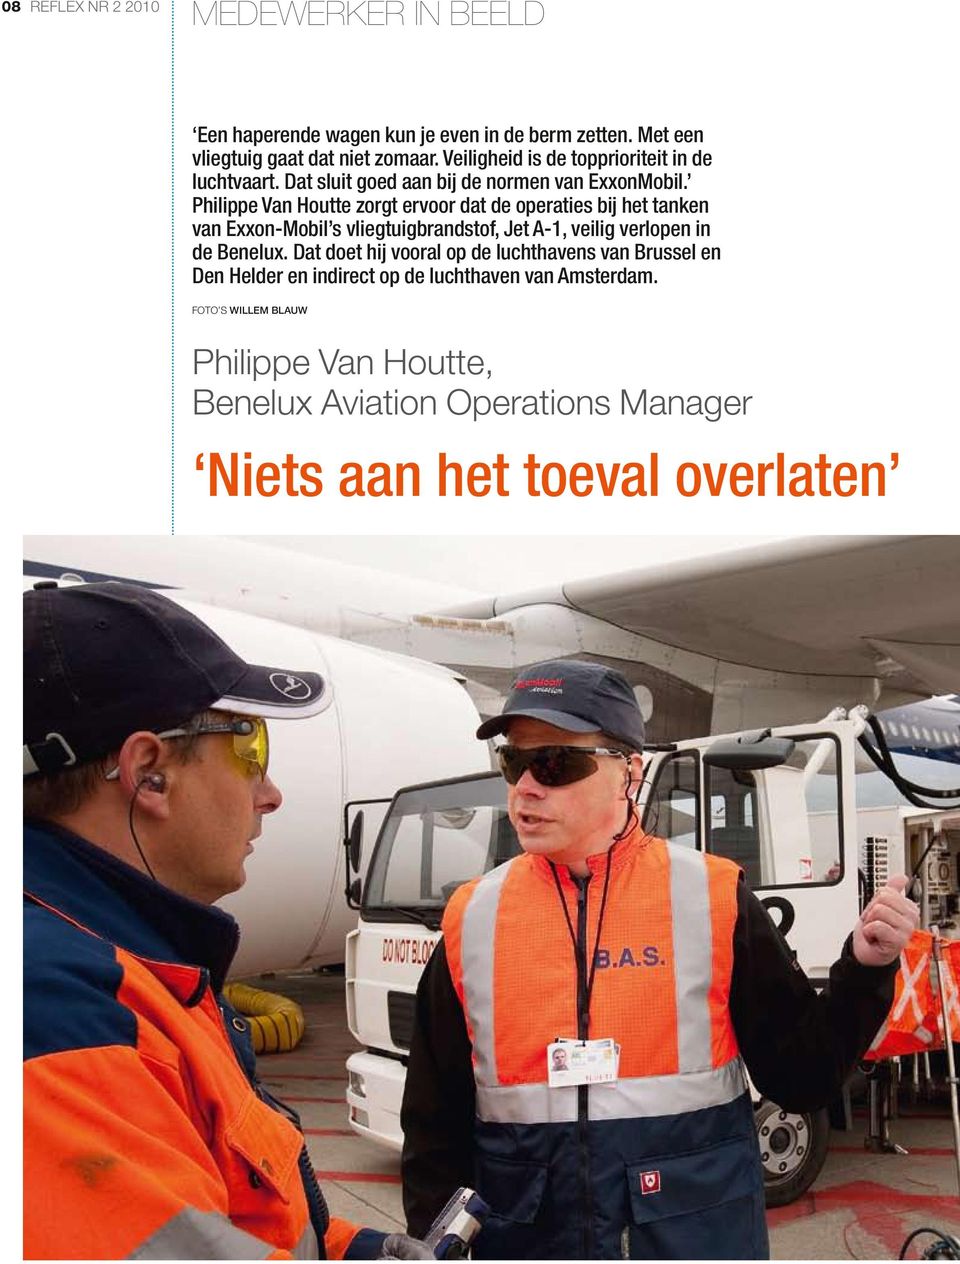 Philippe Van Houtte zorgt ervoor dat de operaties bij het tanken van Exxon-Mobil s vliegtuigbrandstof, Jet A-1, veilig verlopen in de Benelux.